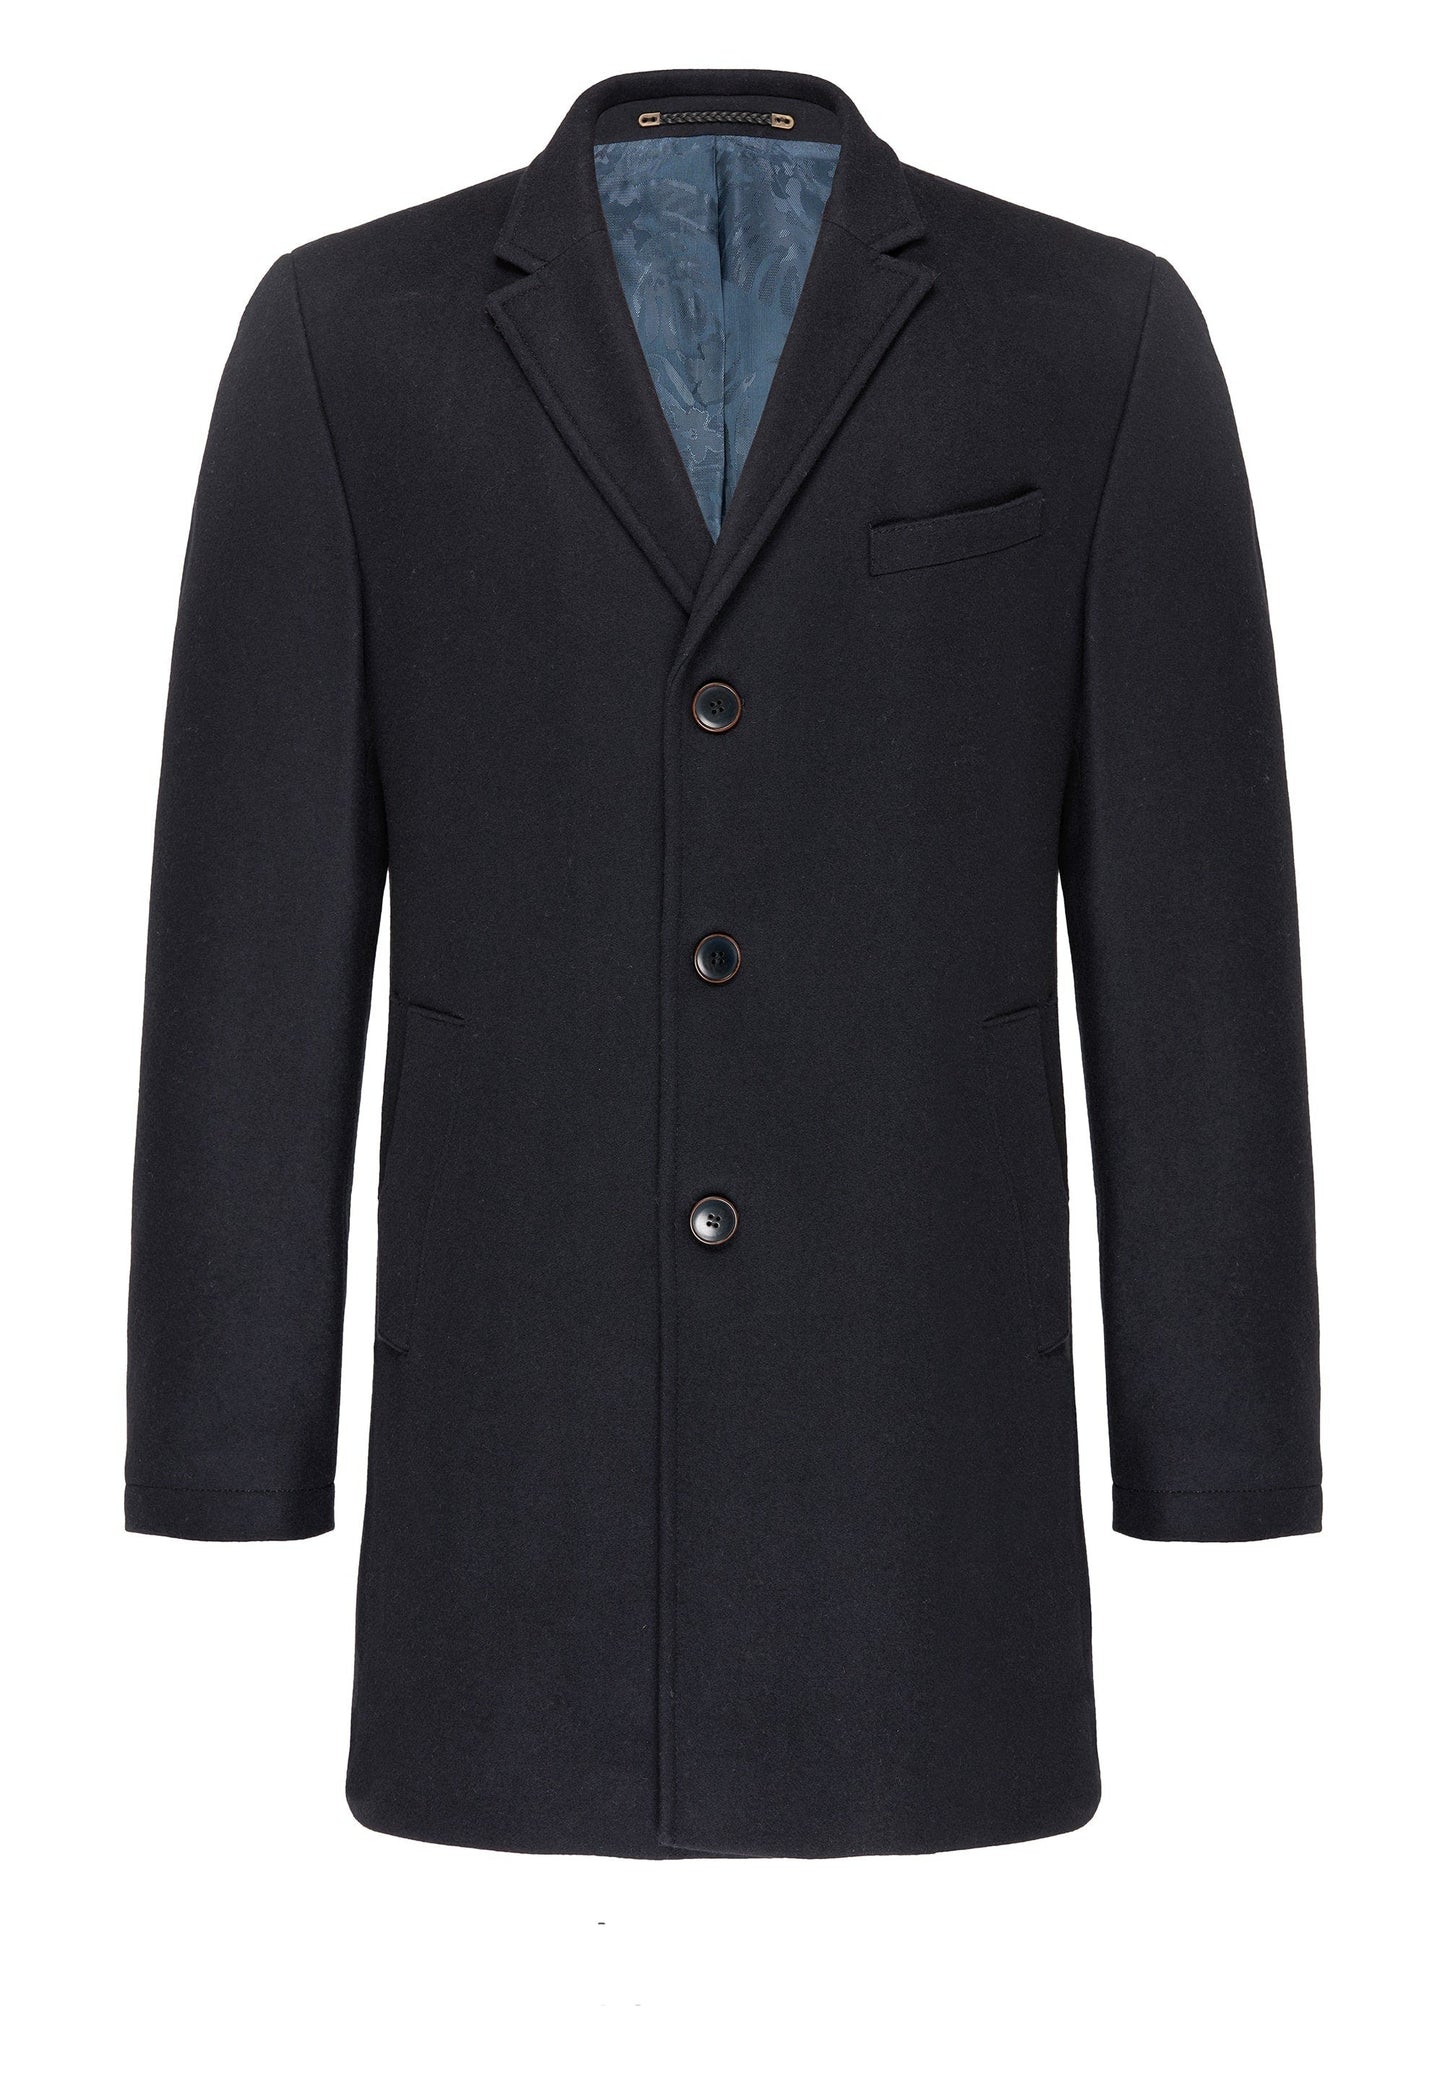 CARL GROSS Wool & Cashmere Blend Coat, Navy